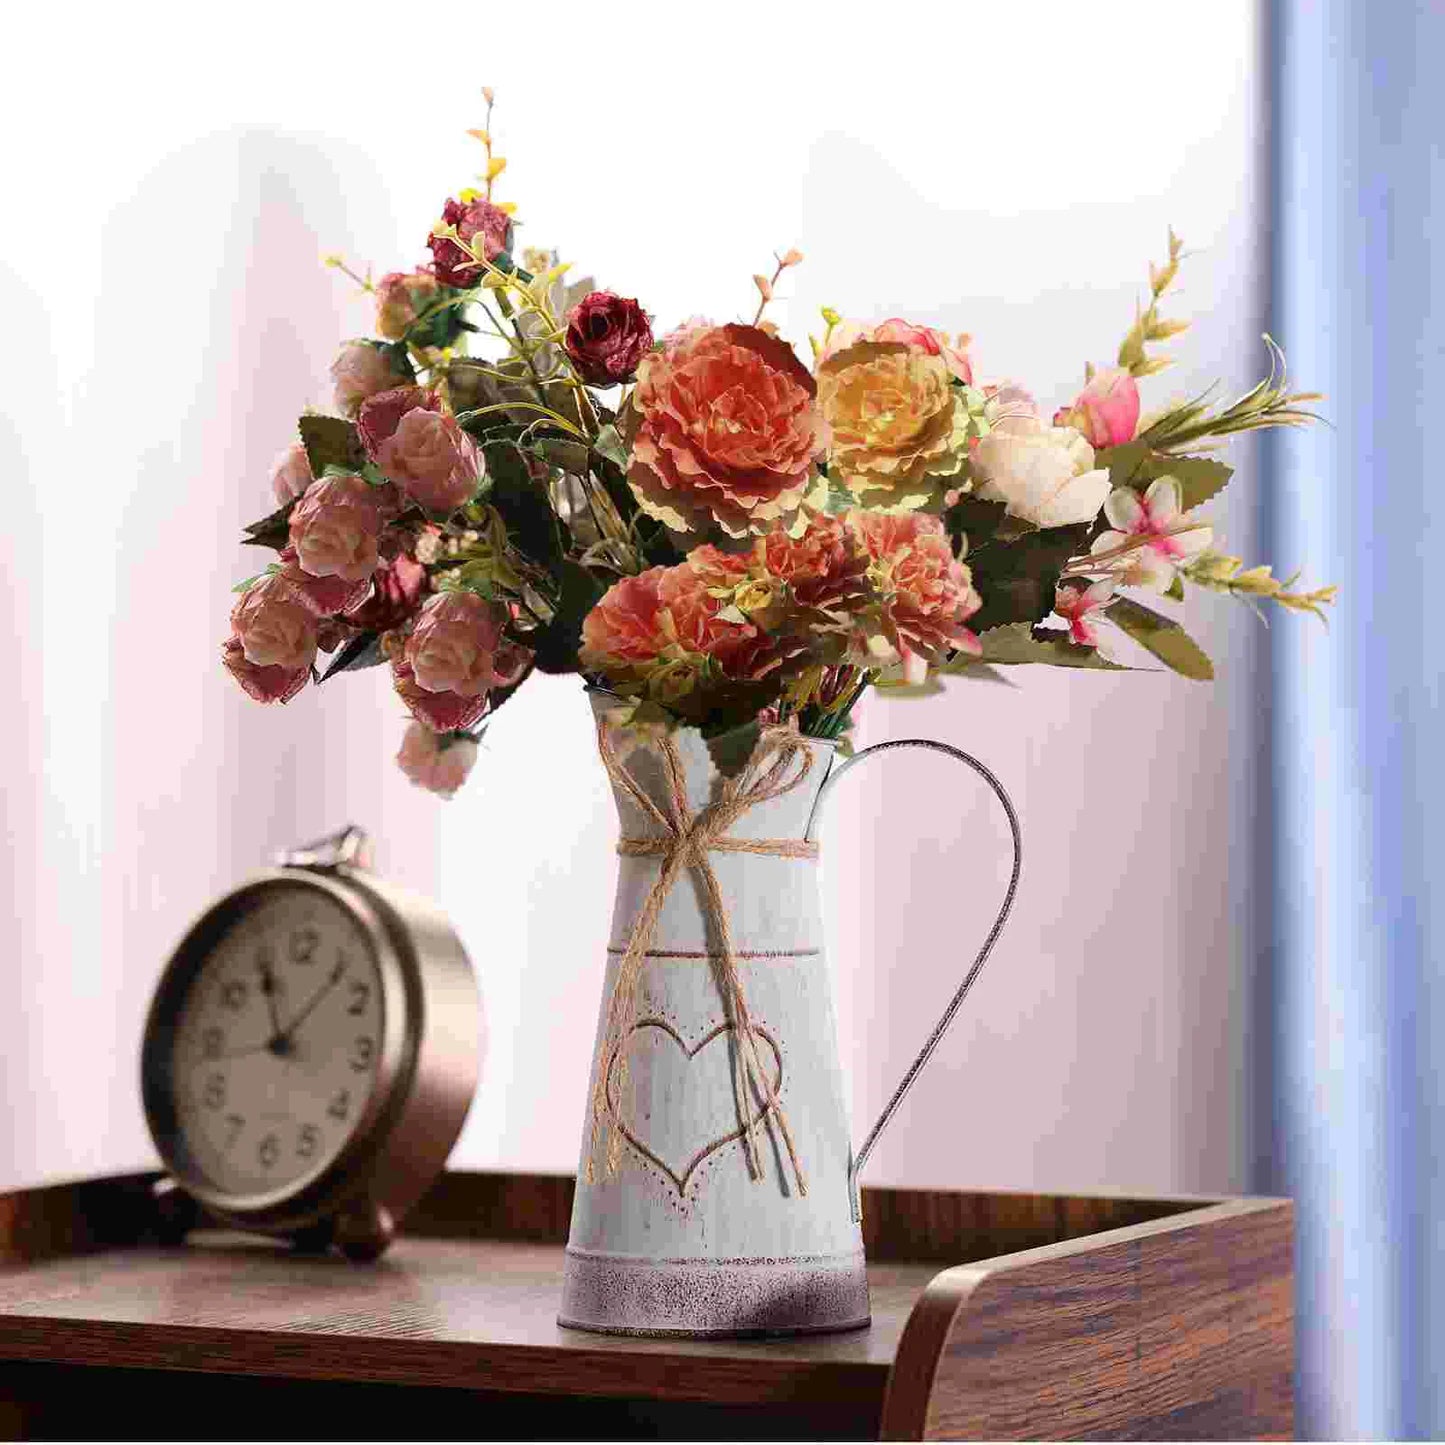 Heart Shaped Flower Arrangement Plant Container Desktop Vase Dried Flowers Tabletop Pot